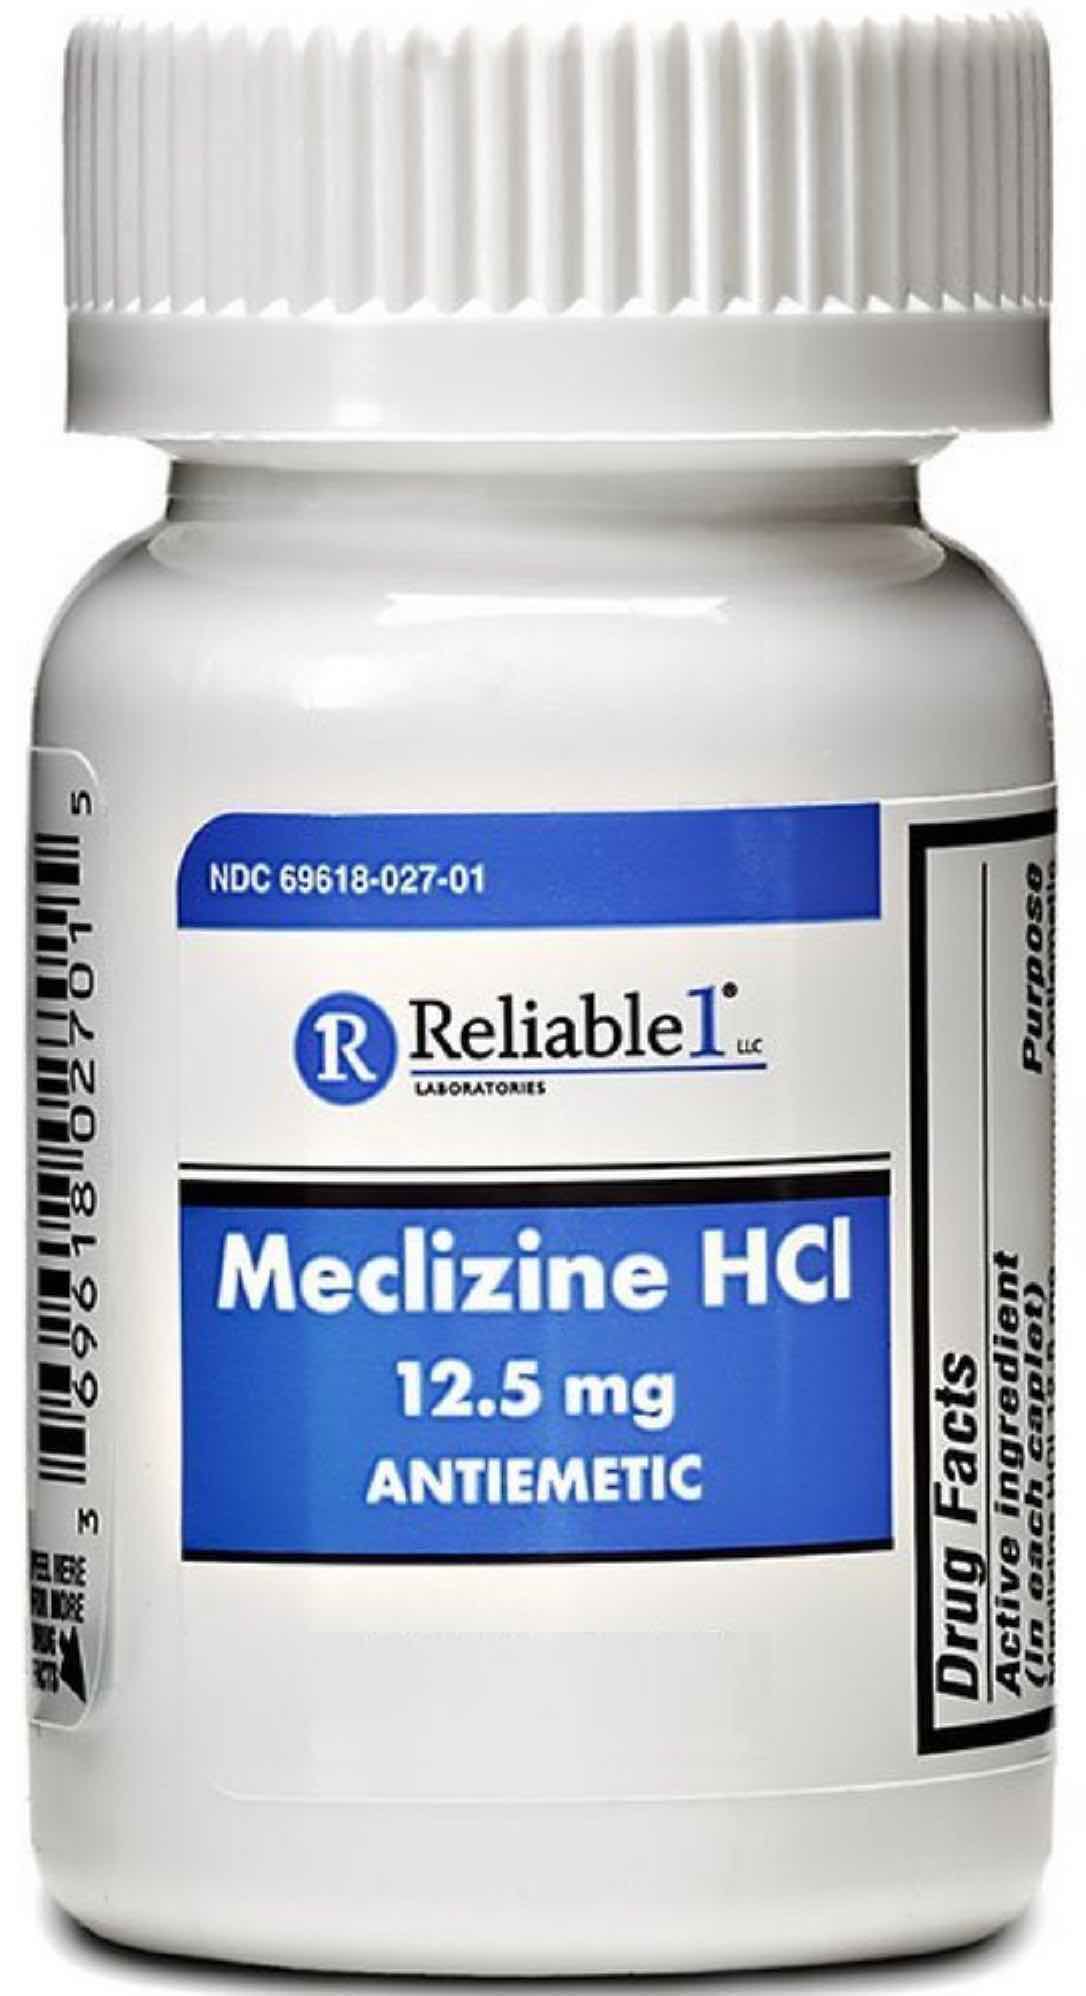 Meclizine 12.5 mg 1 caplet 1